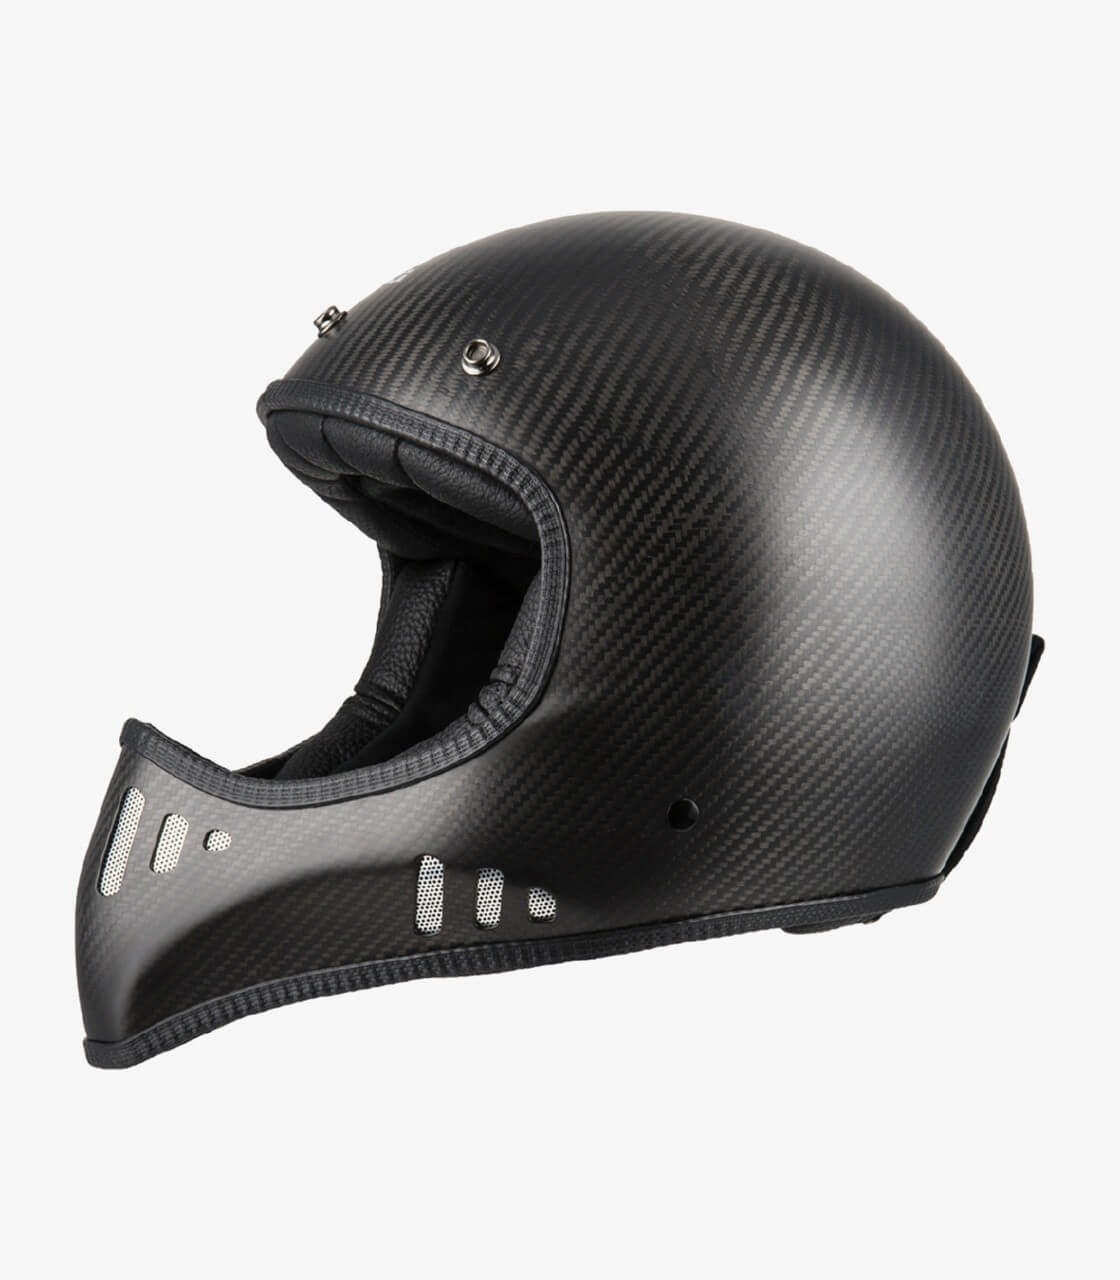 NZI full-face carbon fiber helmet